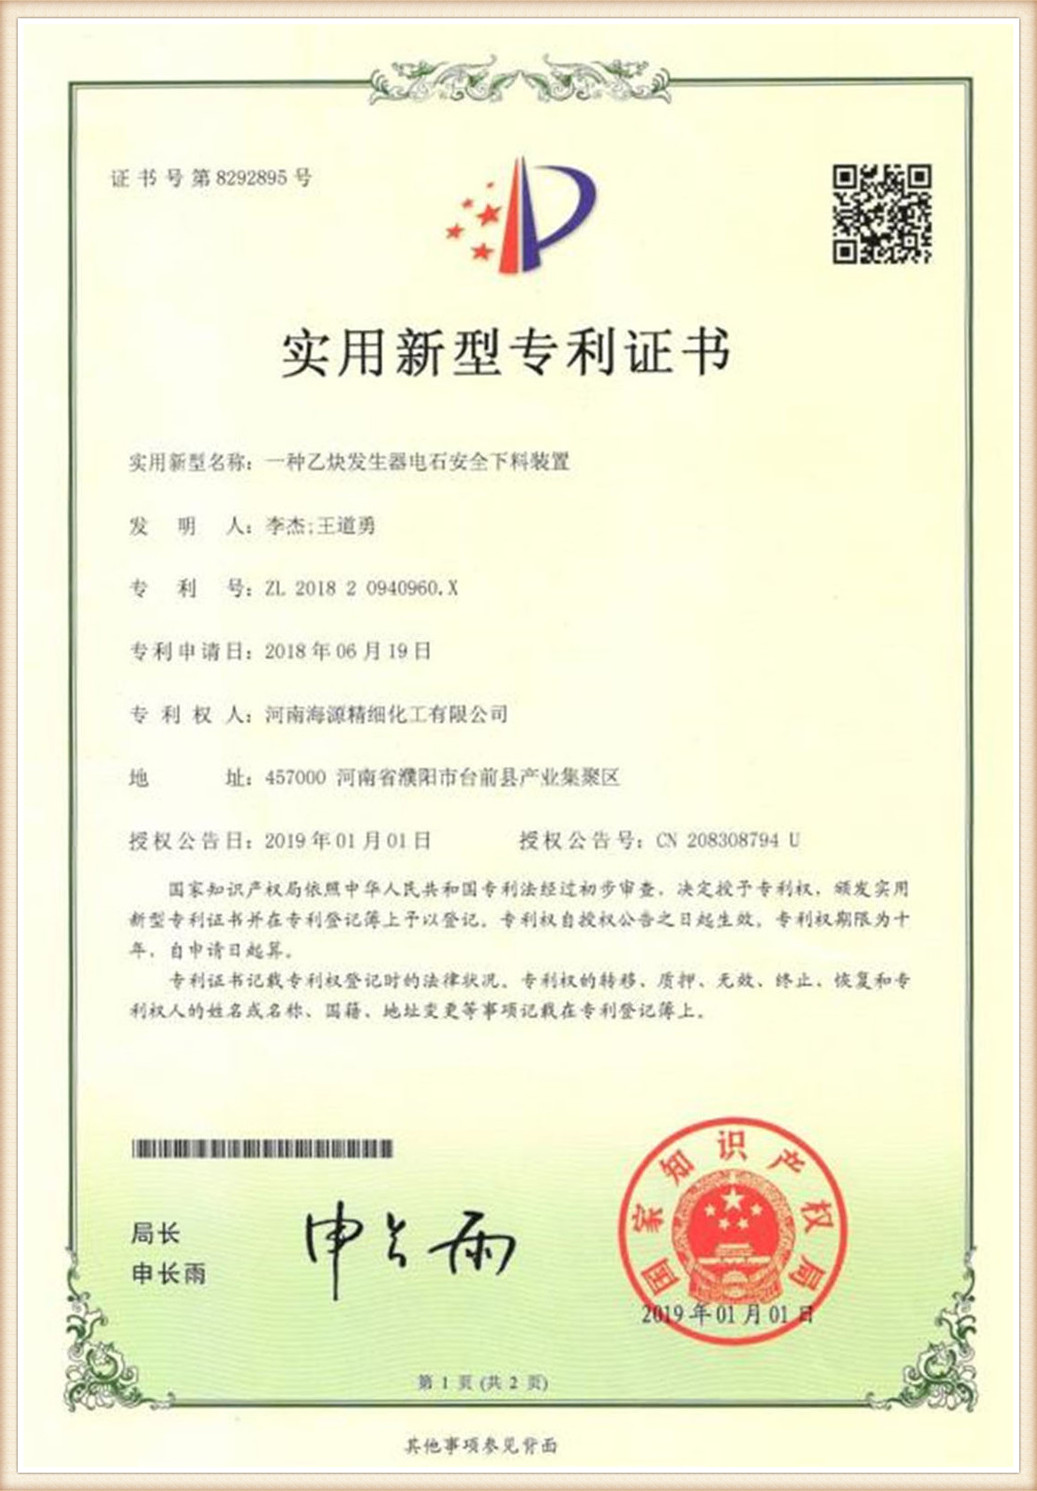 Chizindikiro cha Patent (14)